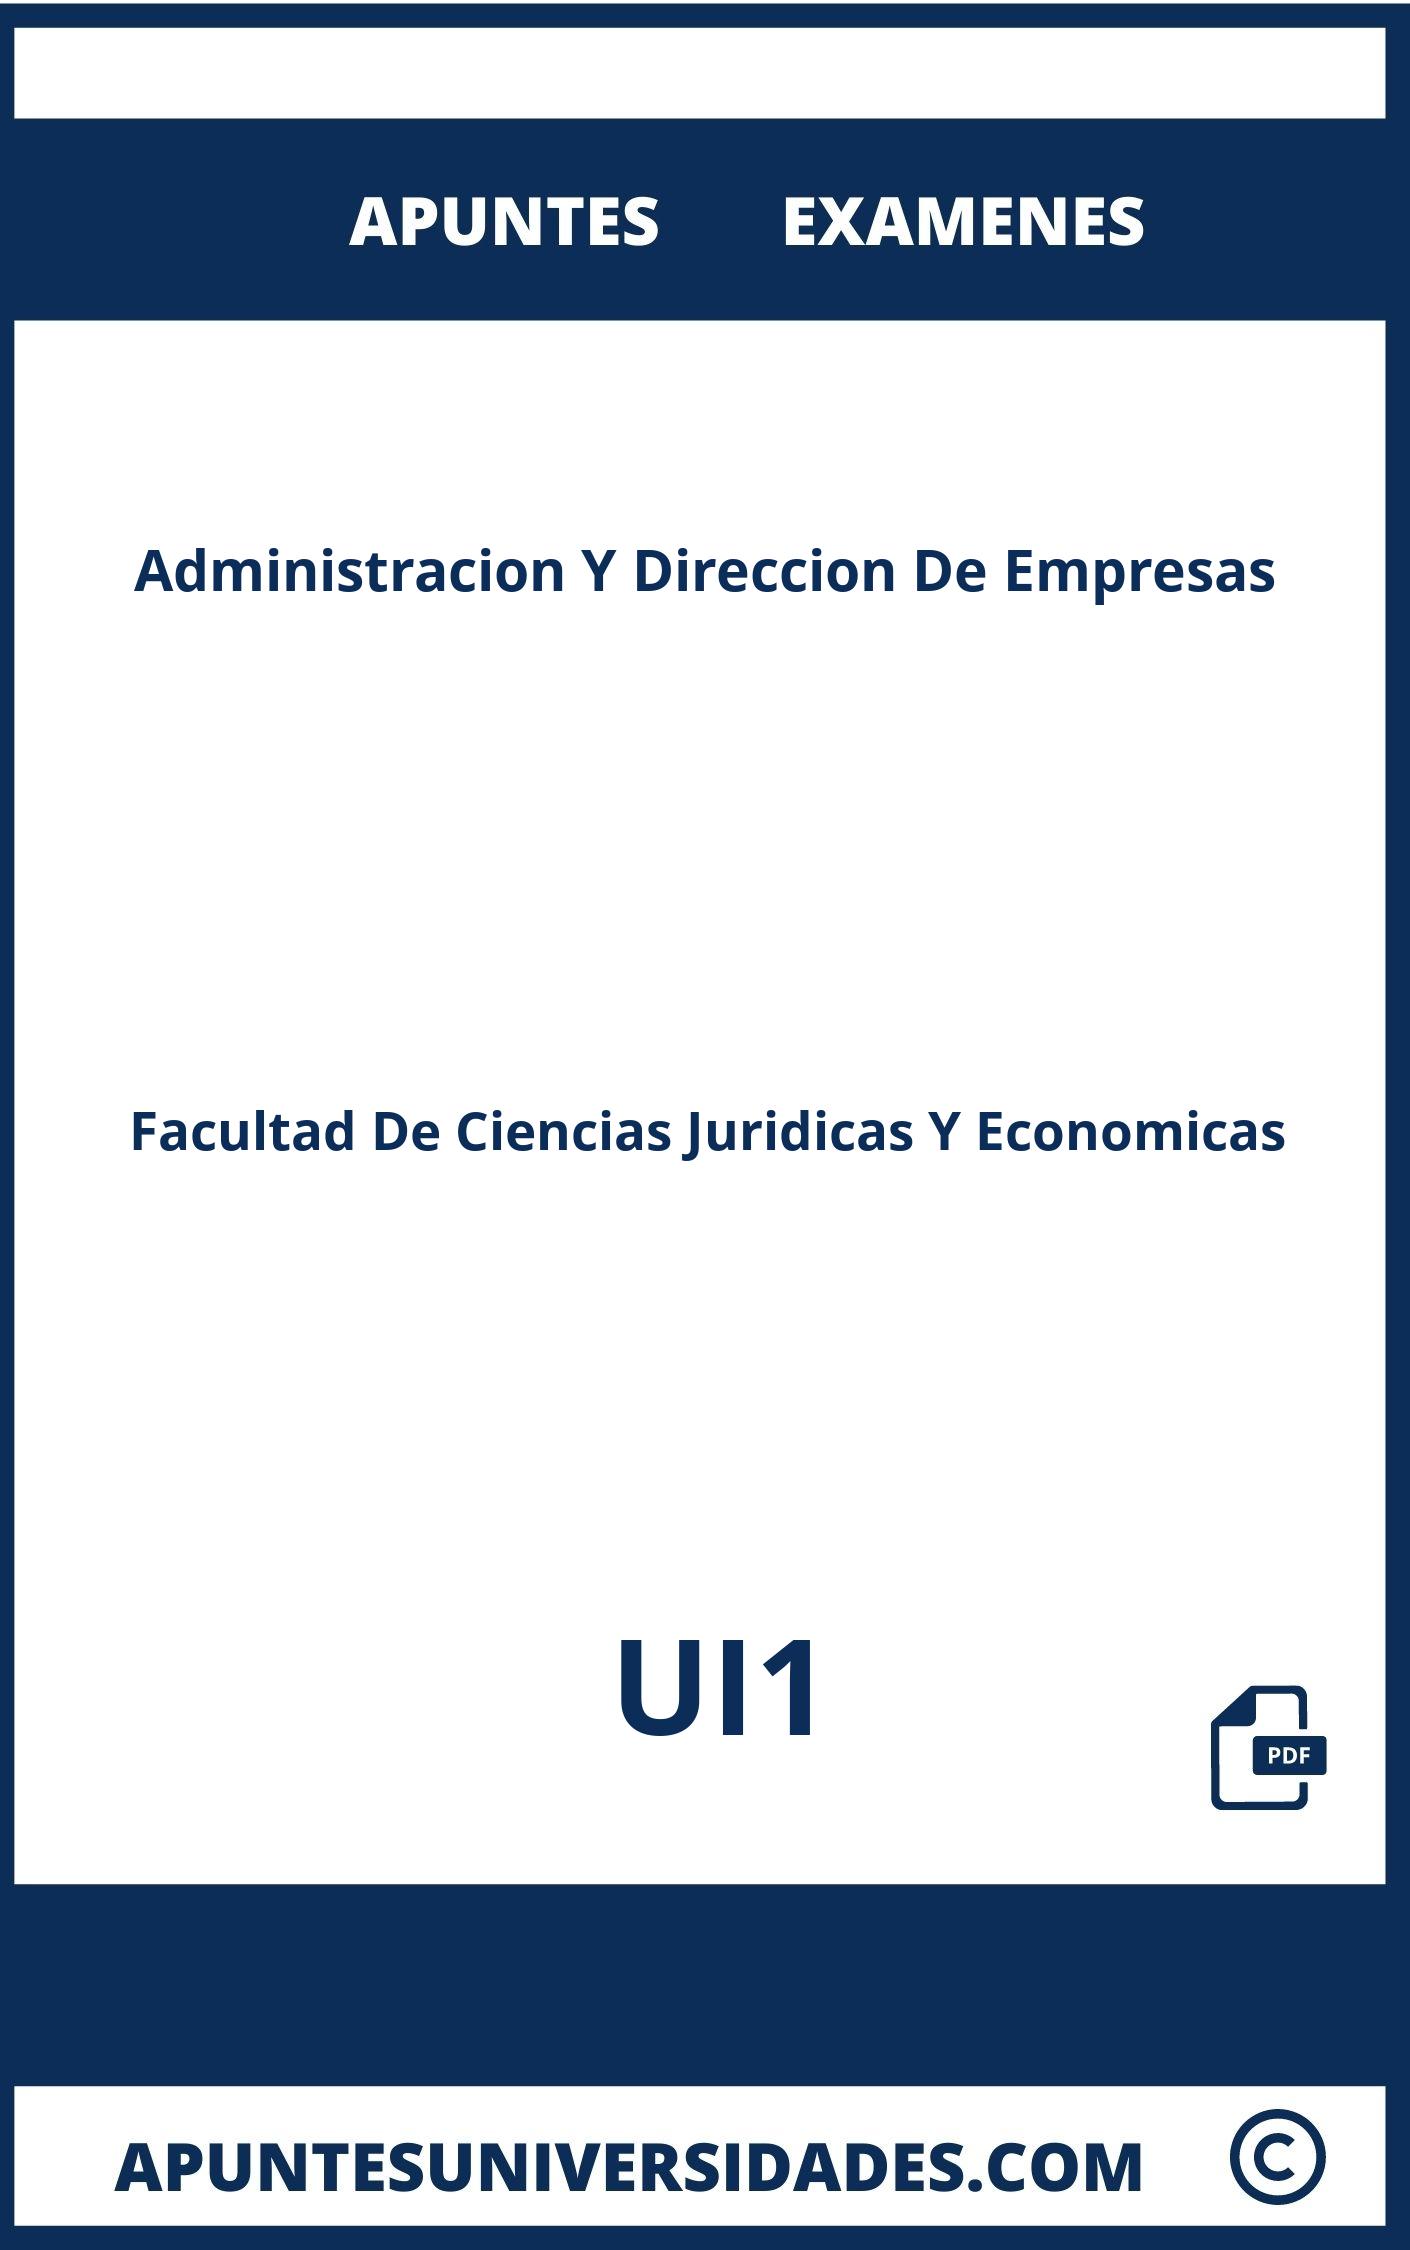 Examenes y Apuntes Administracion Y Direccion De Empresas UI1